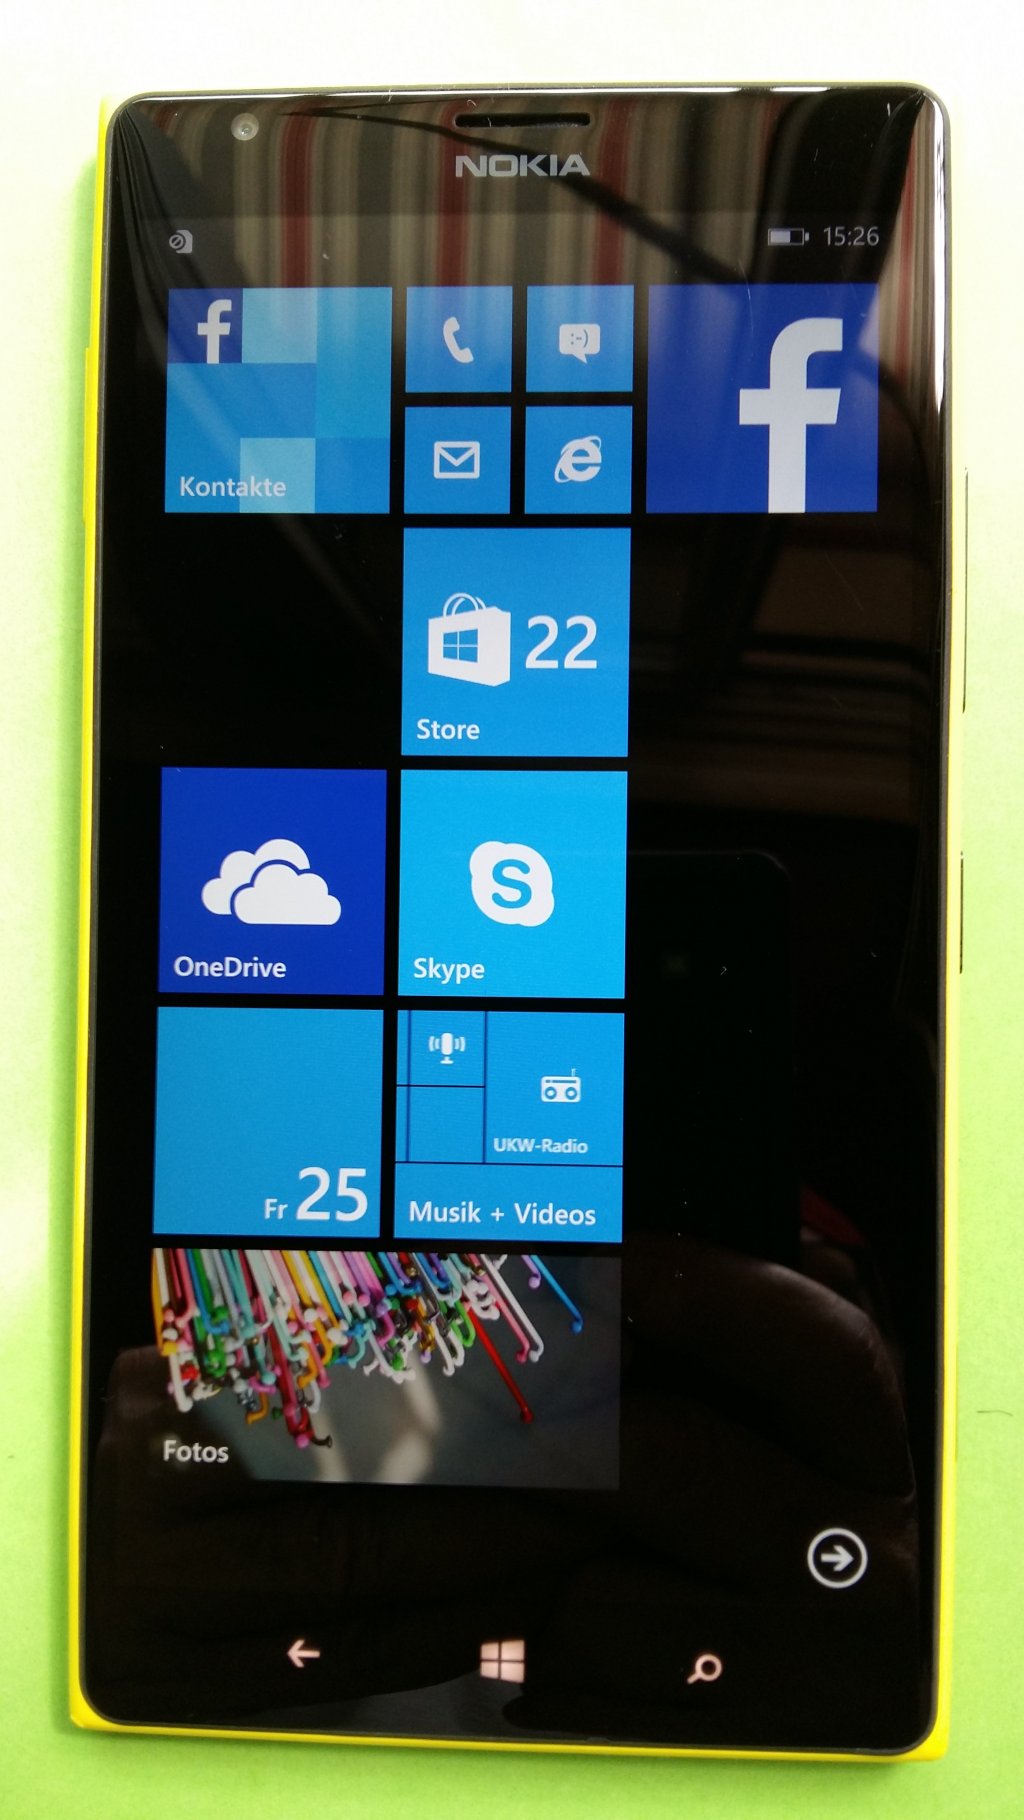 image-8308295-Nokia_1520.1_Lumia_(1)1.w640.jpg